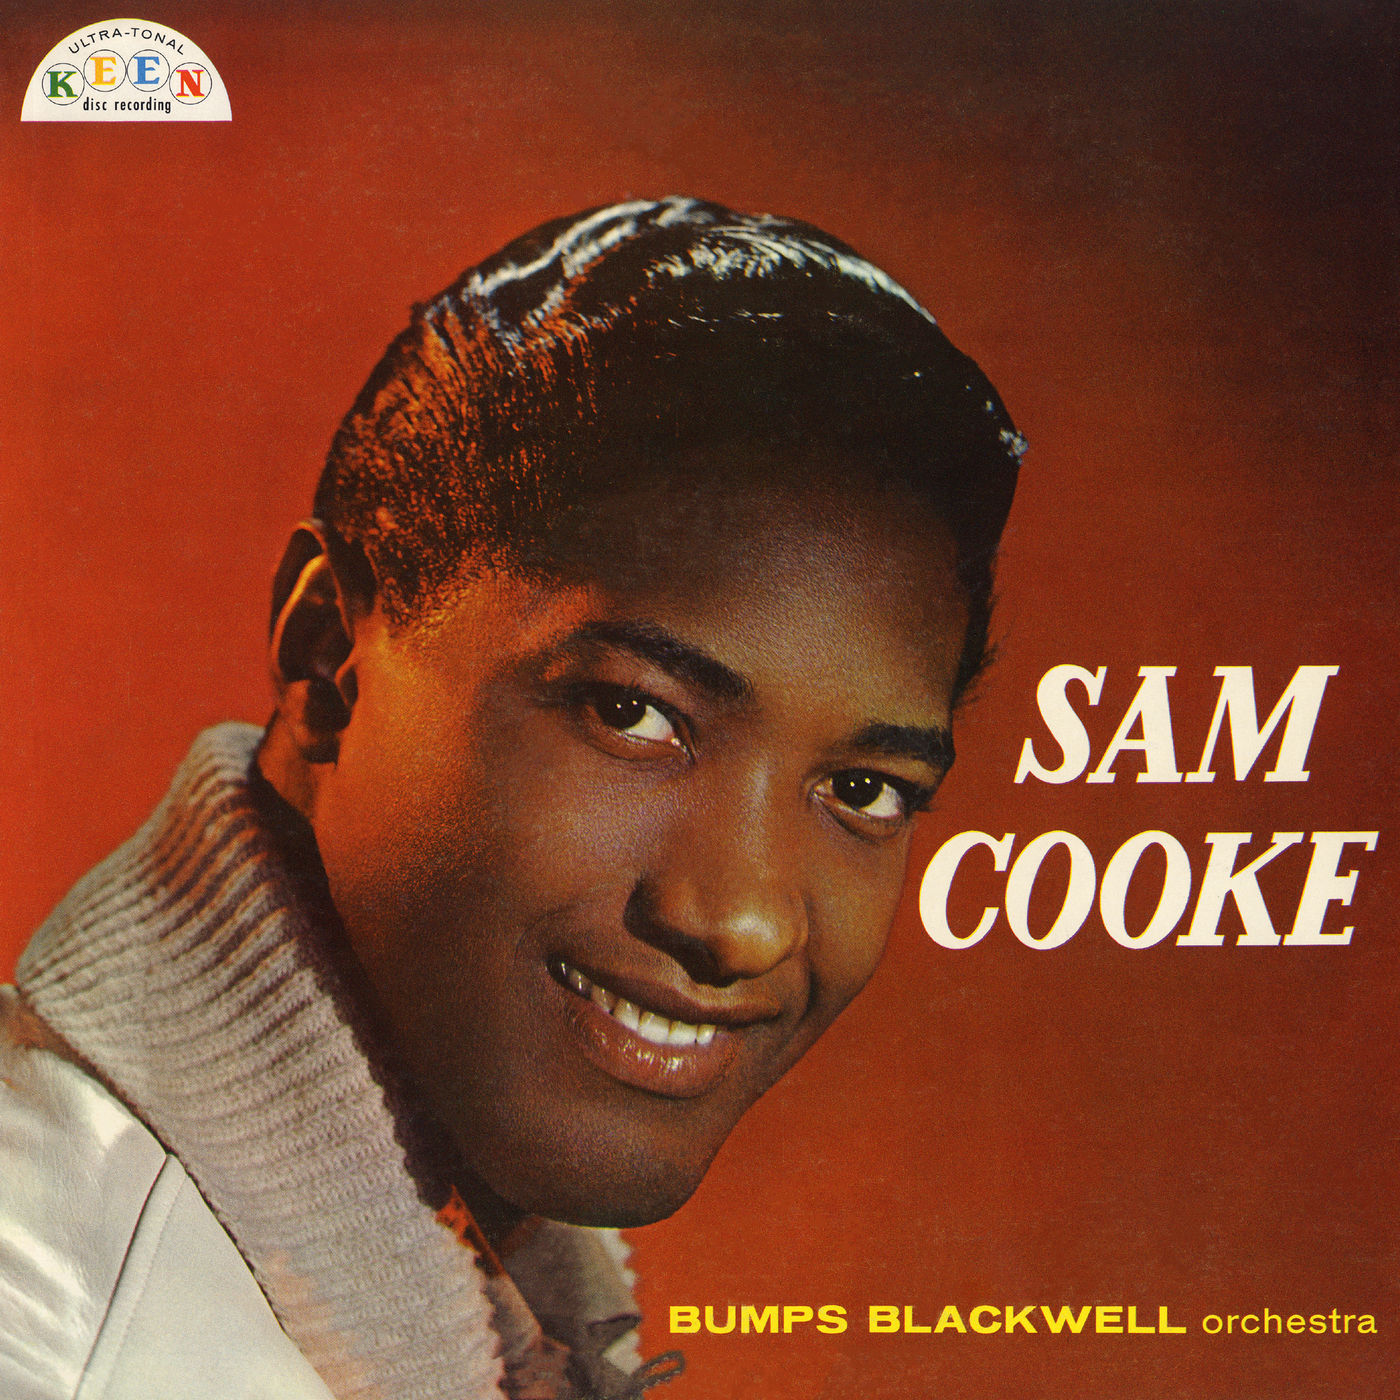 Sam Cooke – Sam Cooke (1958/2020) [Official Digital Download 24bit/96kHz]